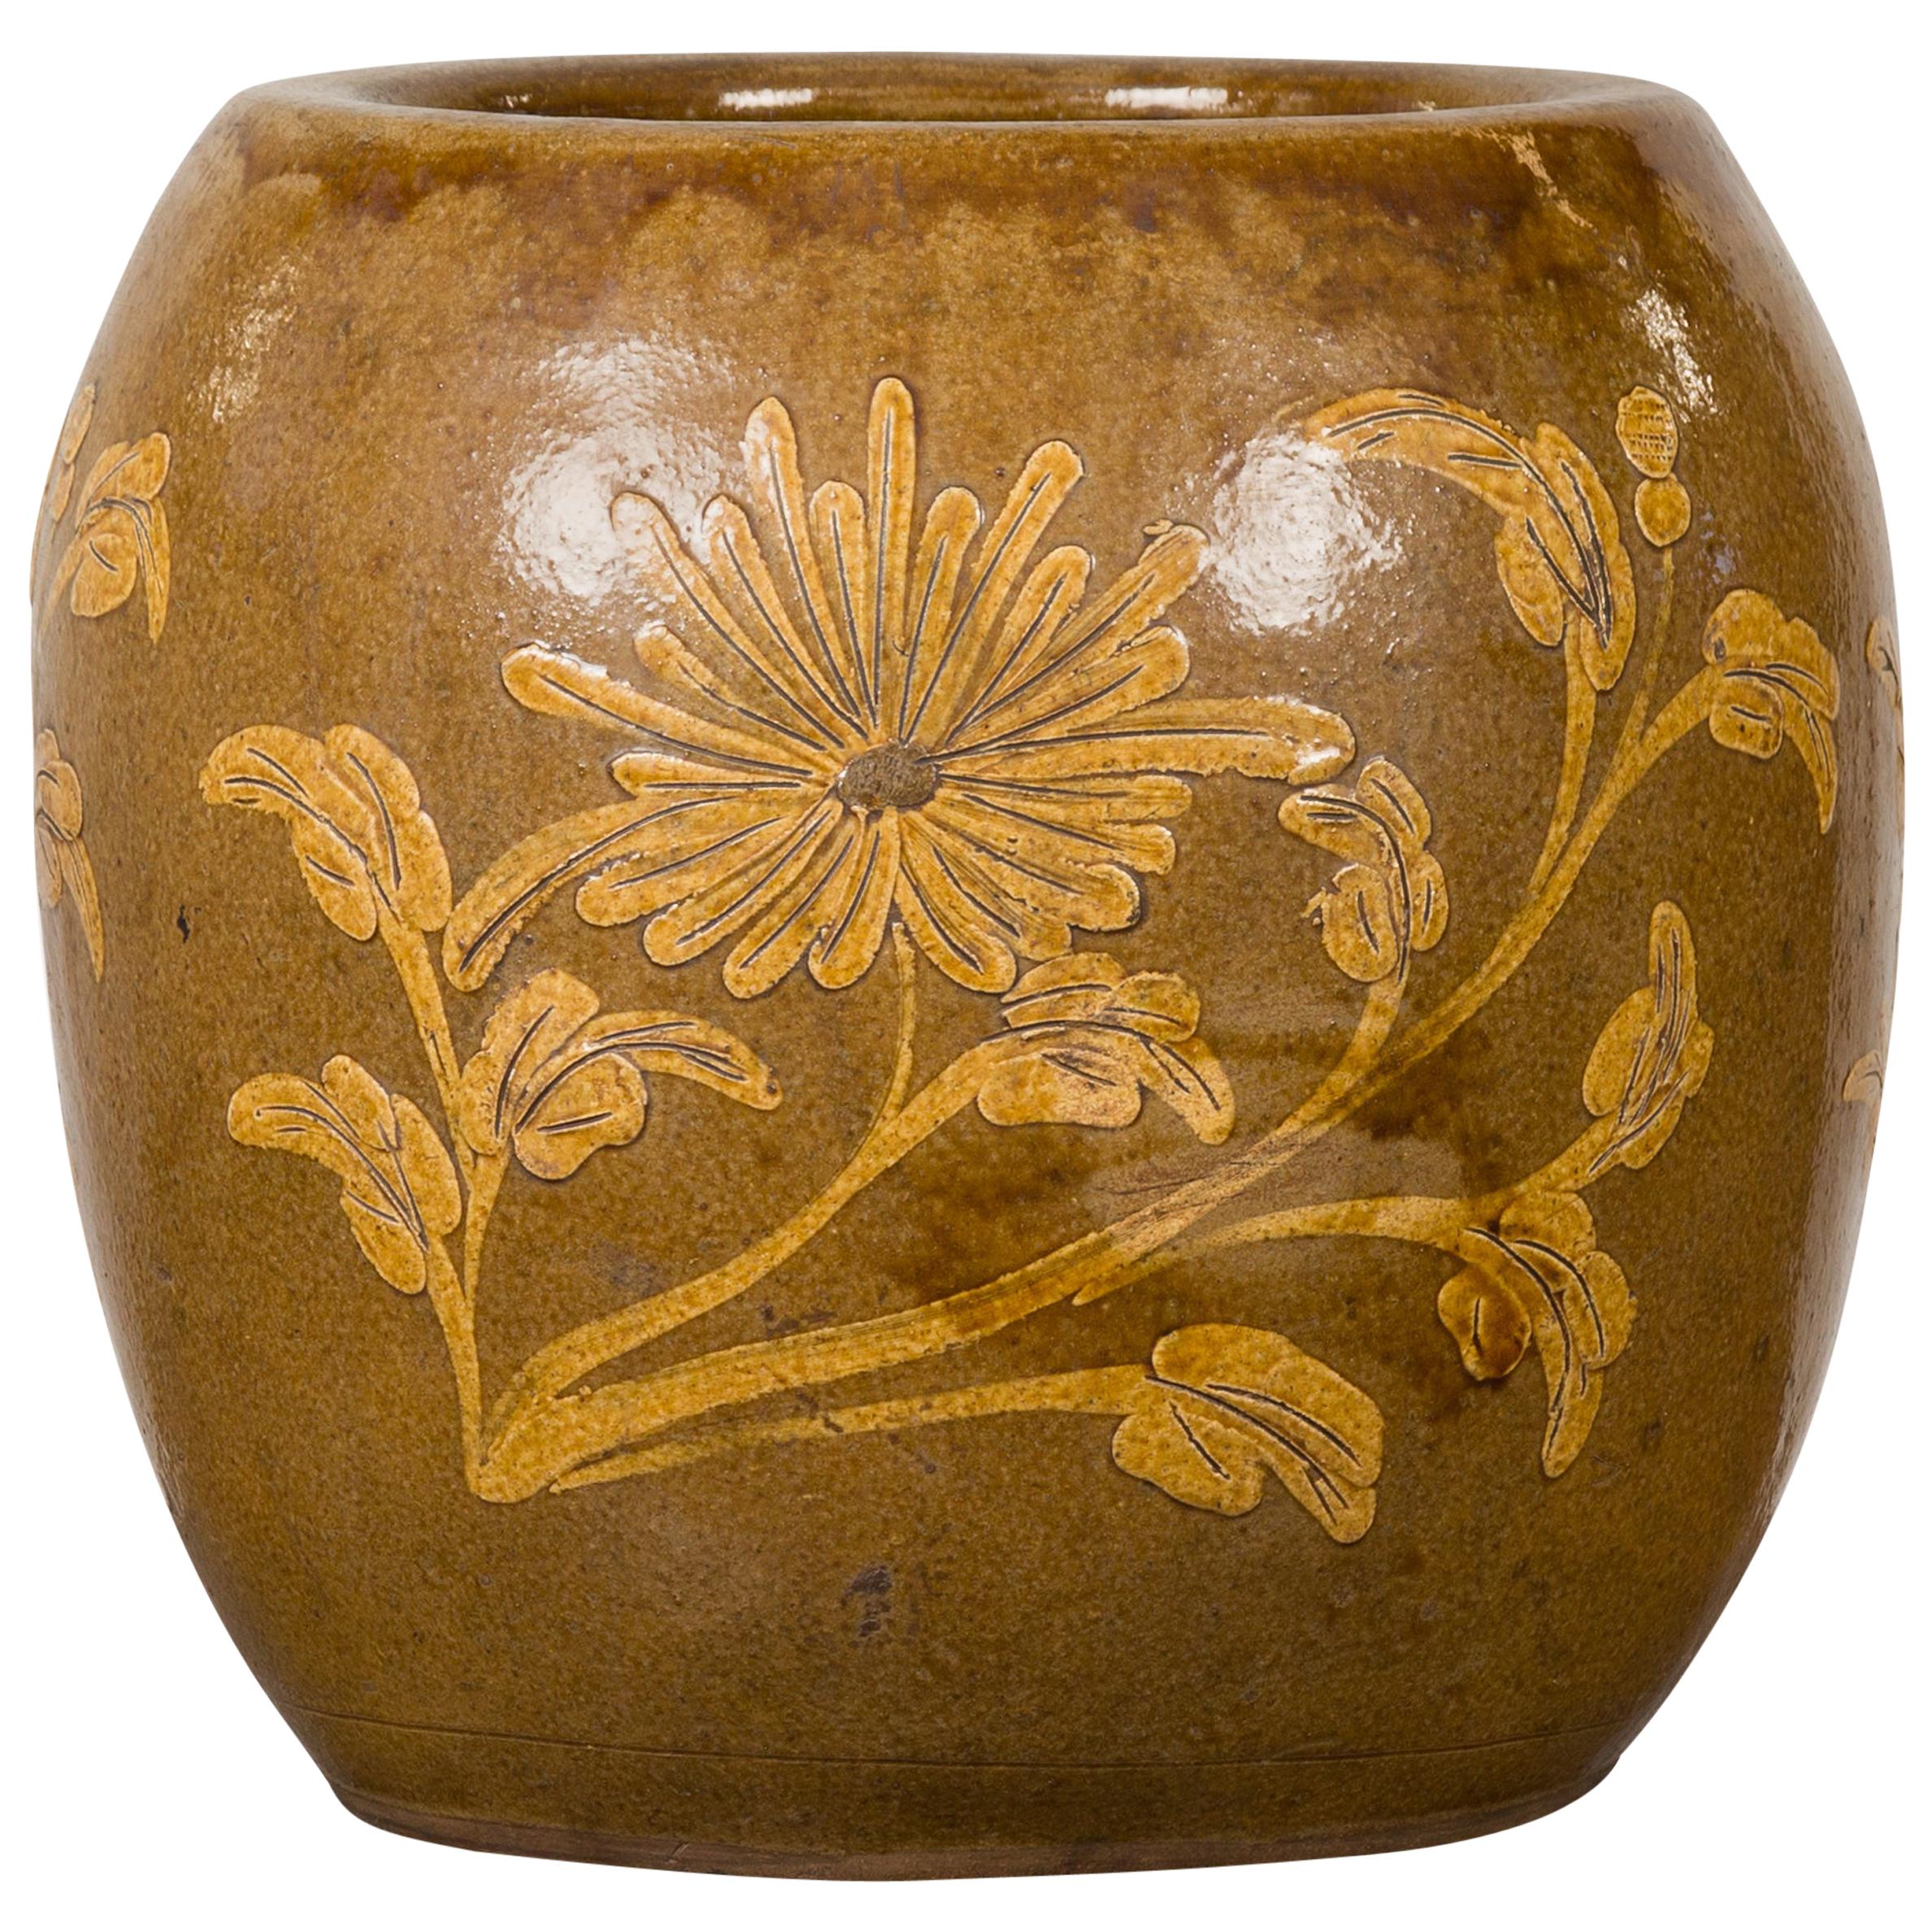 Antique Thai Glazed Ceramic Brown Round Planter with Golden Floral Motifs